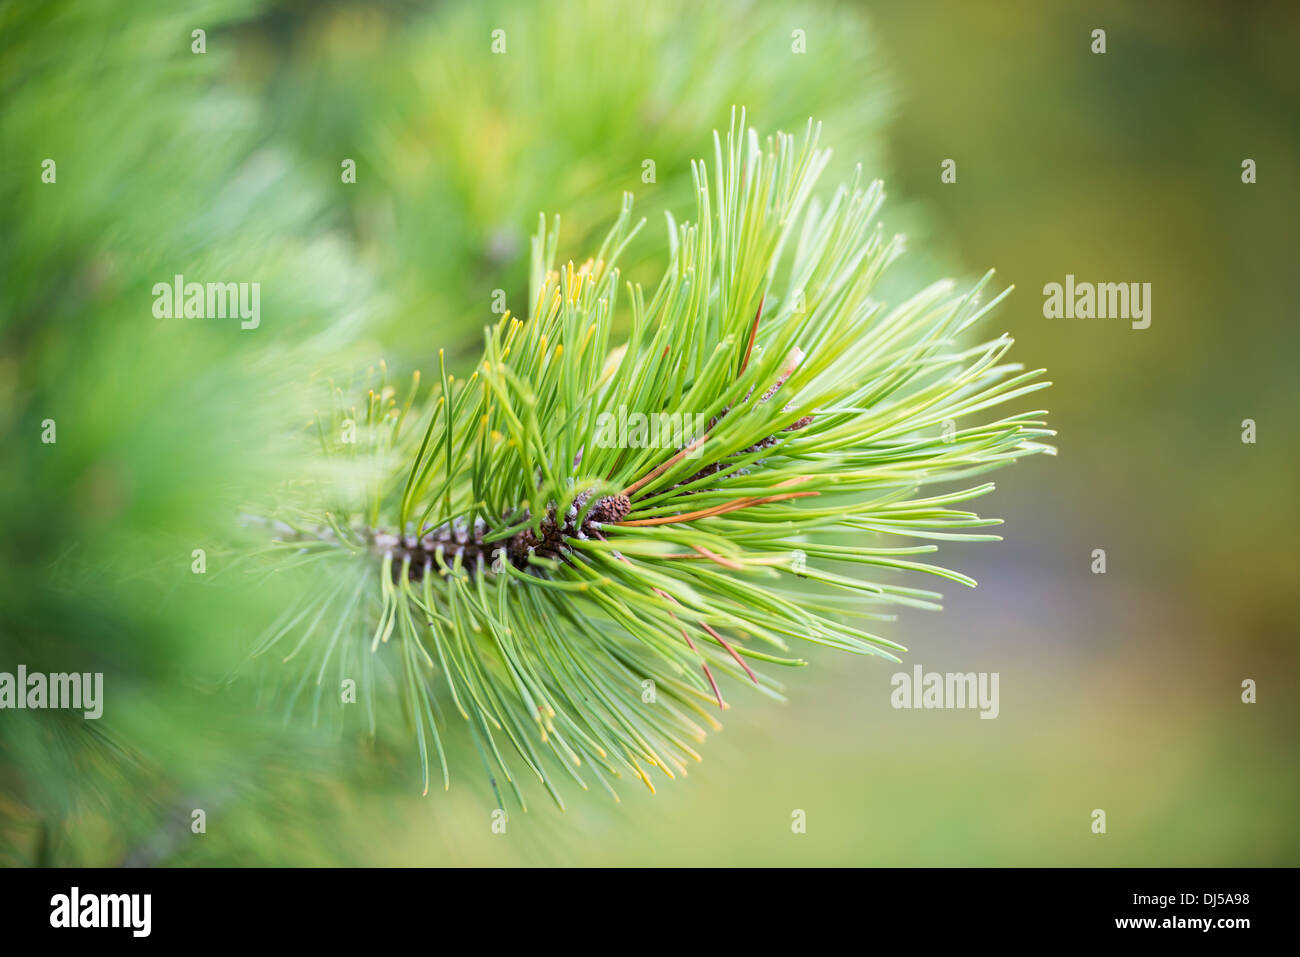 Detalle de pino en el bosque, rama con agujas verde Foto de stock